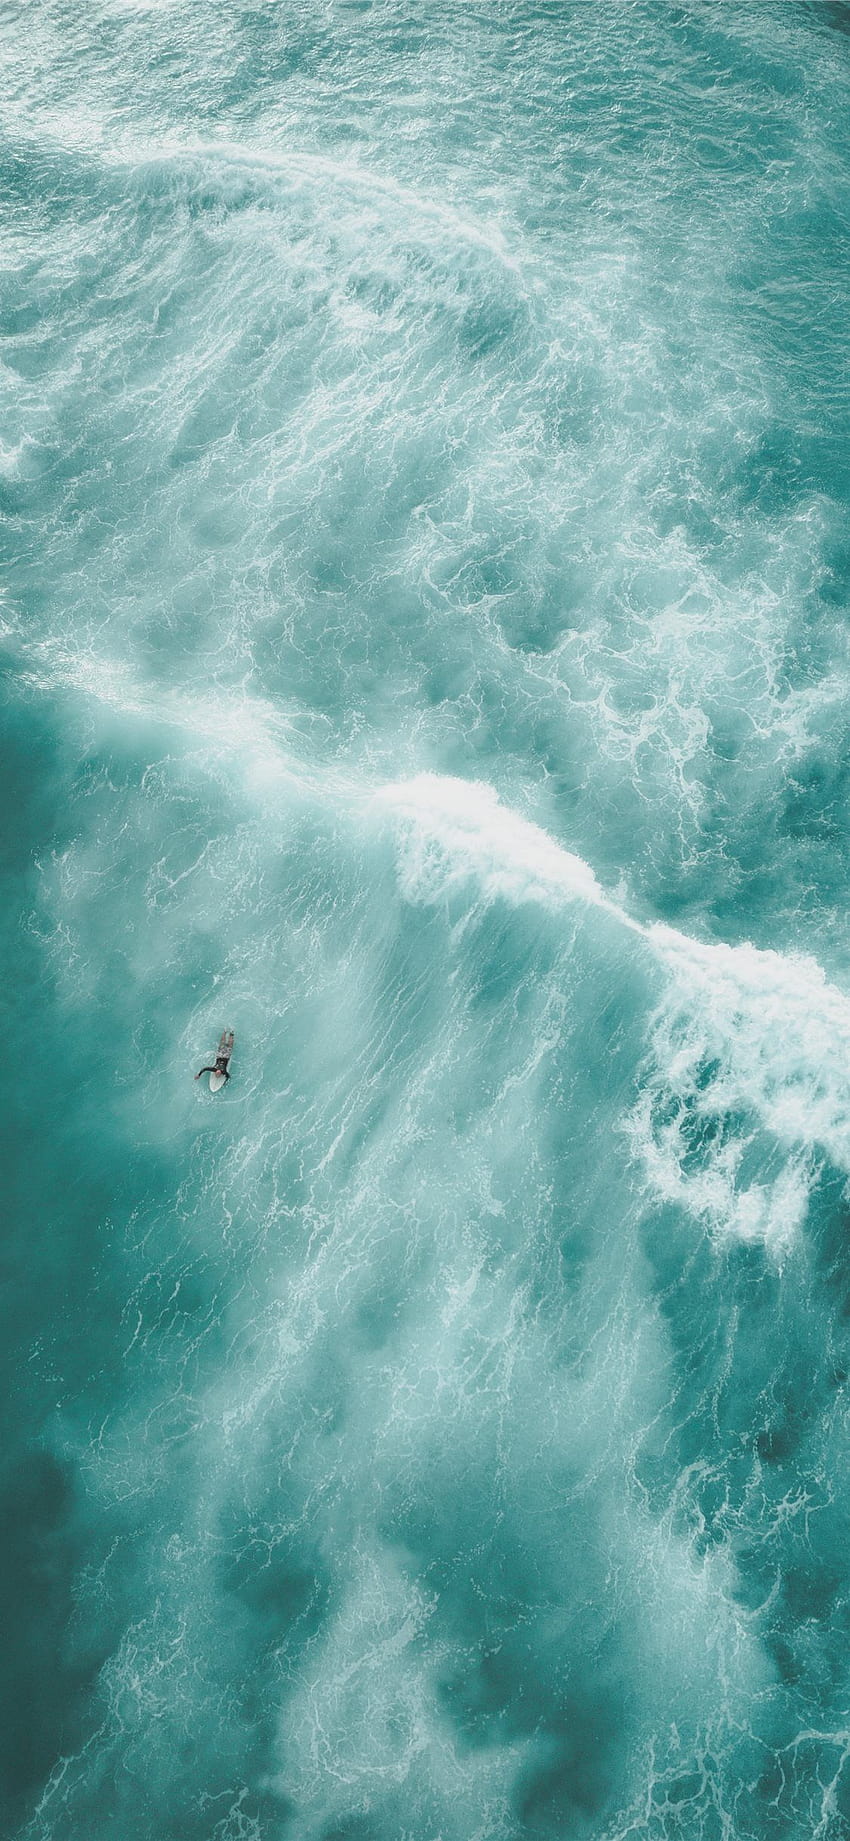 水上にいる人の鳥瞰図 iPhone X HD電話の壁紙